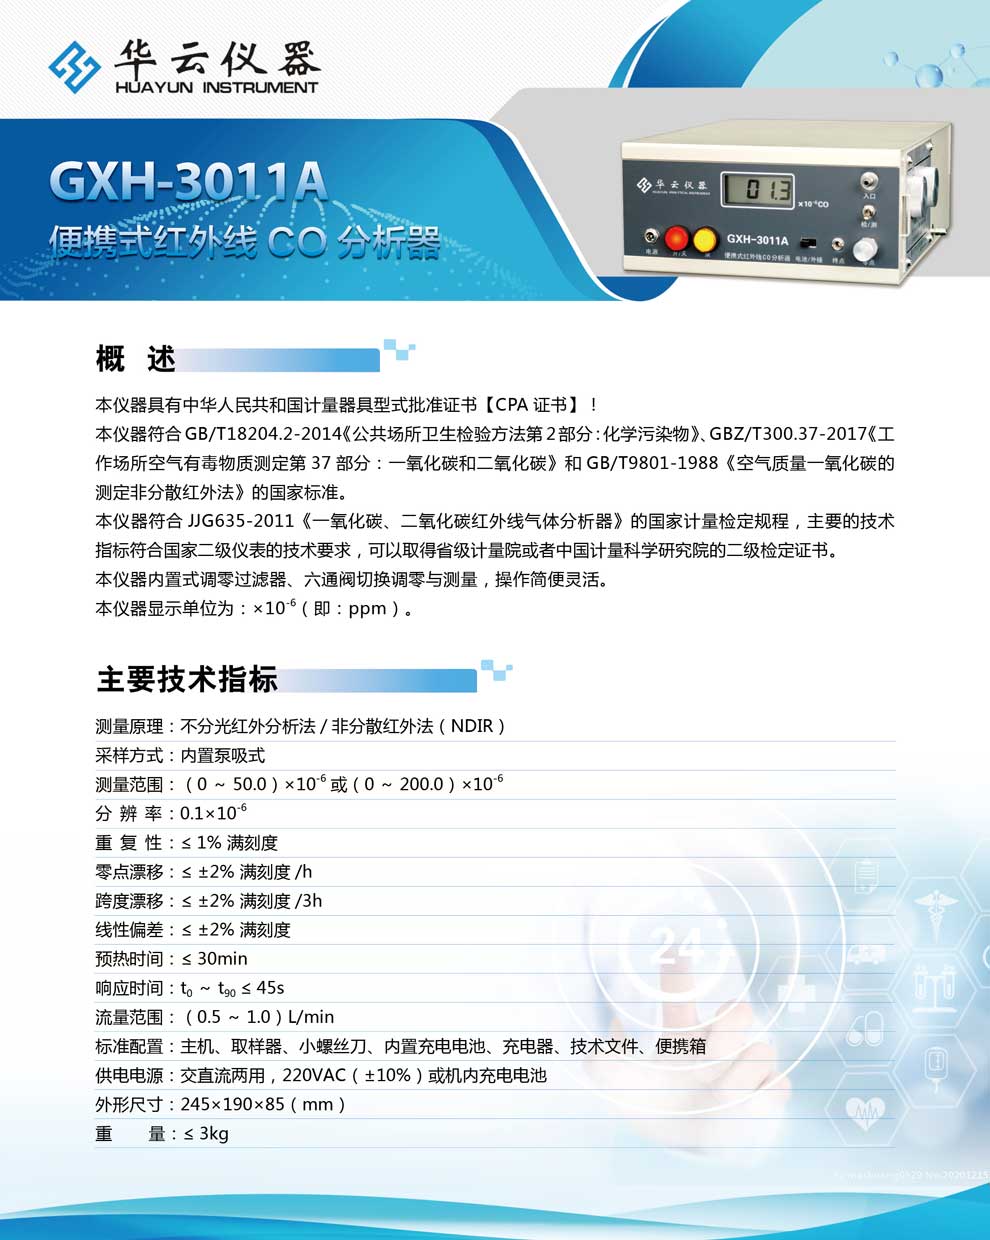 GXH-3011A系列-彩页.jpg